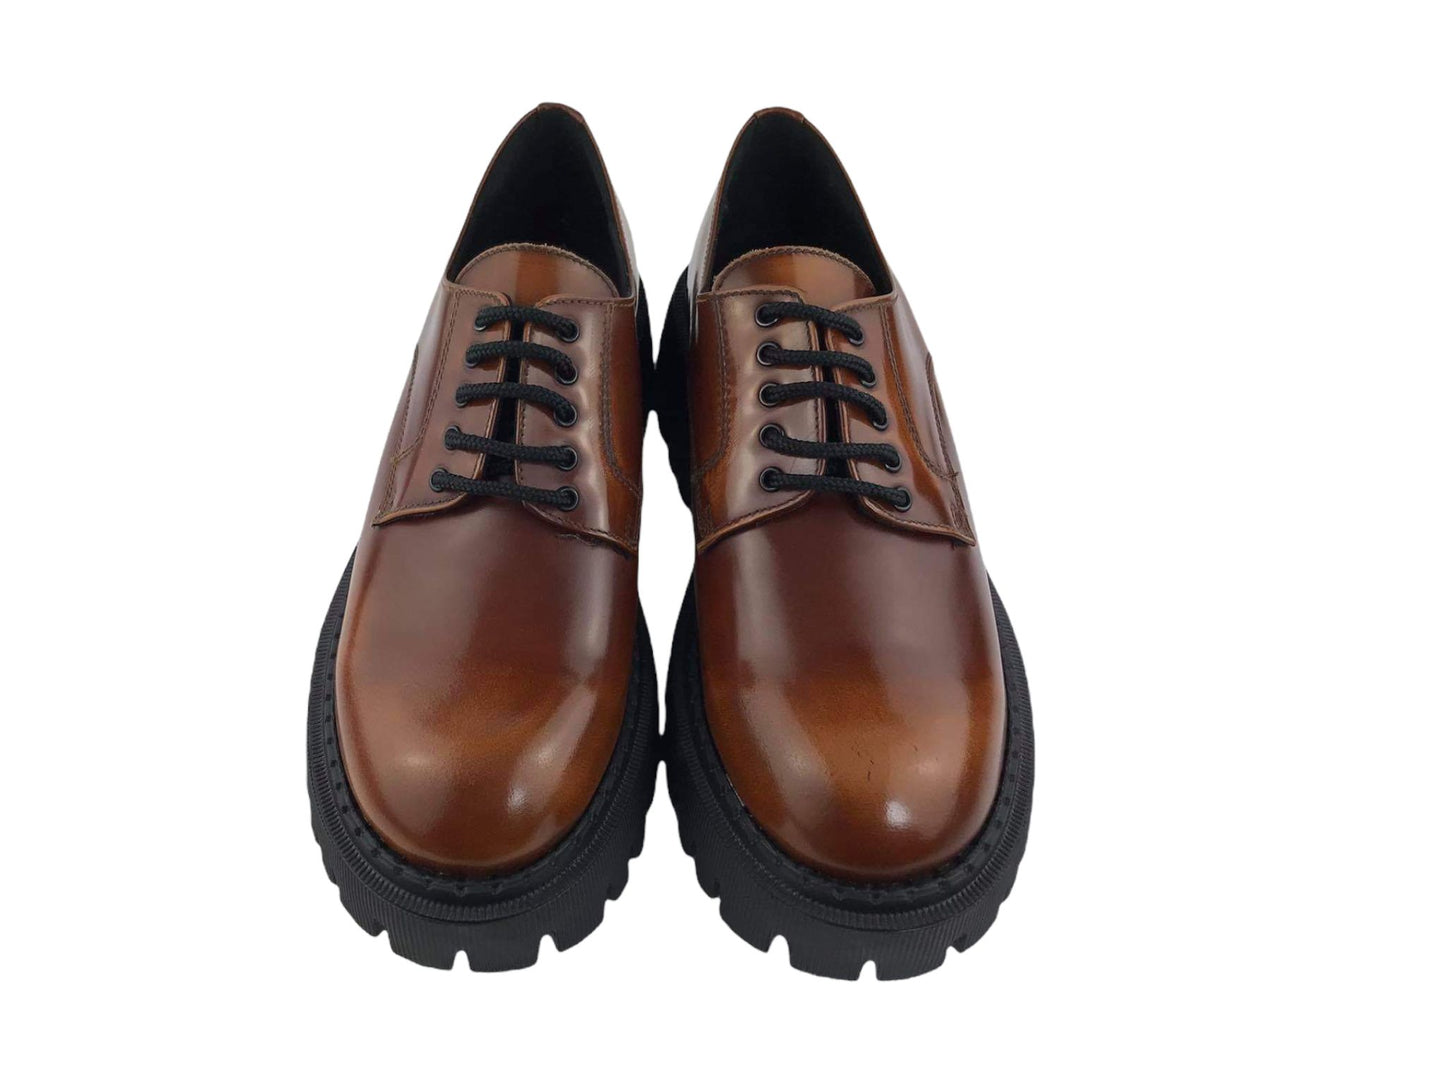 Marnat | Zapatos mujer Ambra estilo Oxford con cordones cuero encerado color caramelo